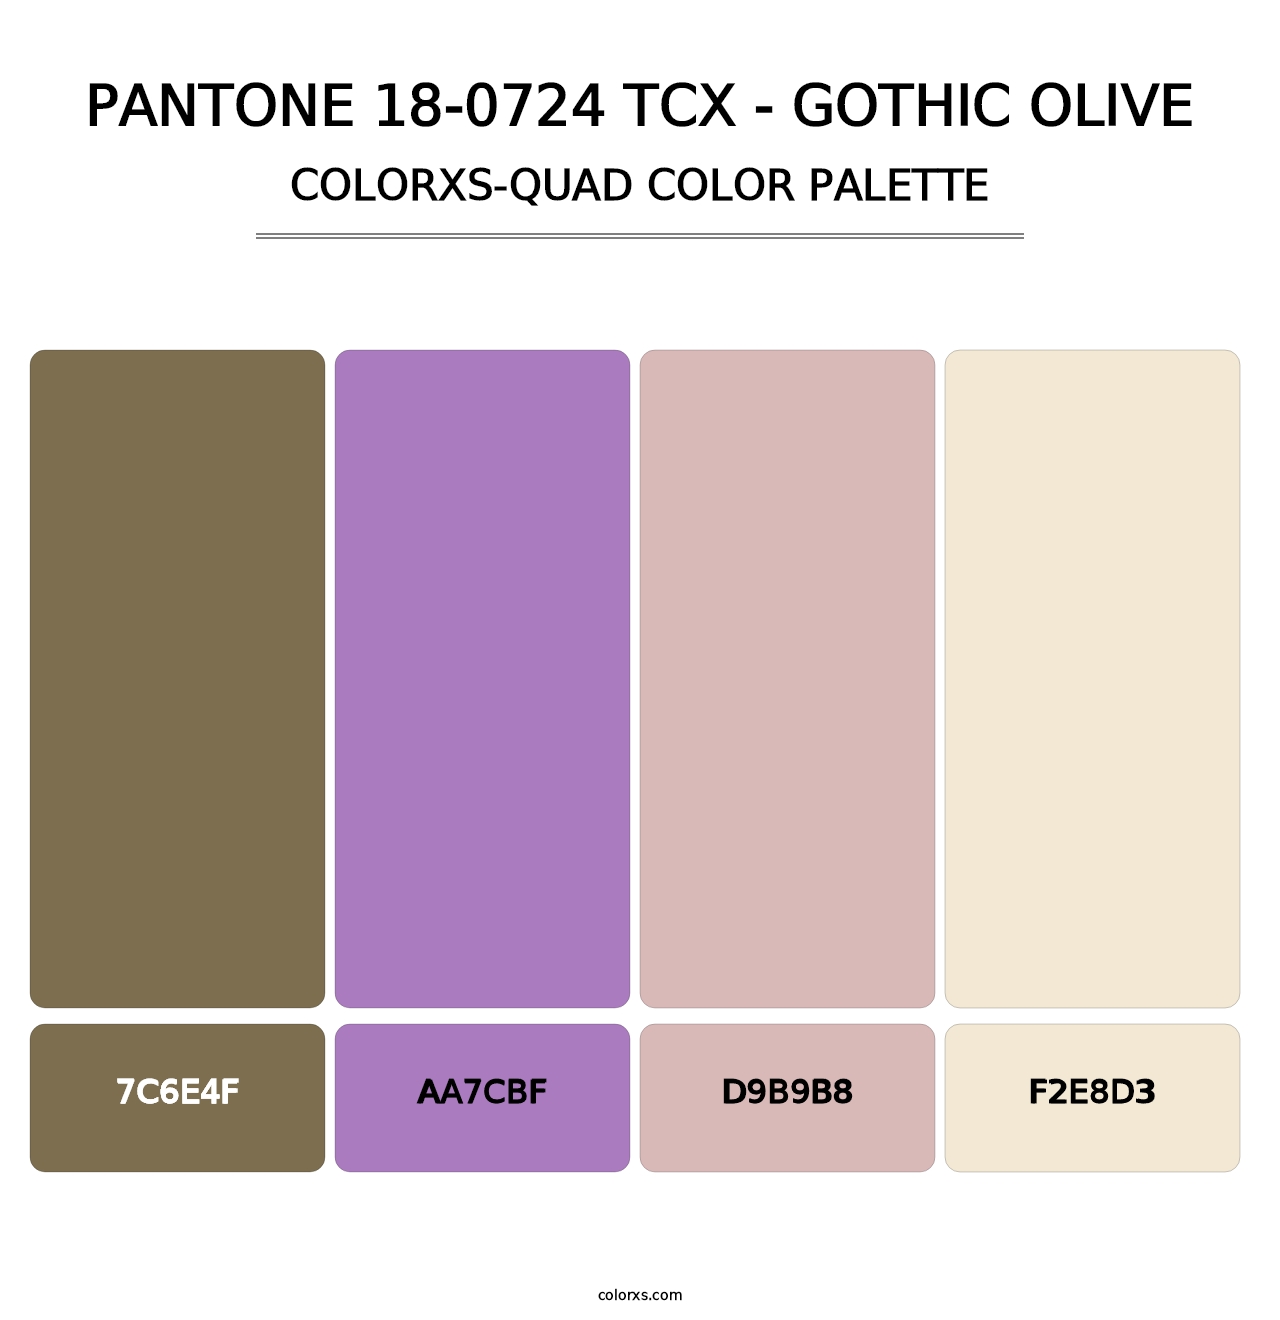 PANTONE 18-0724 TCX - Gothic Olive - Colorxs Quad Palette